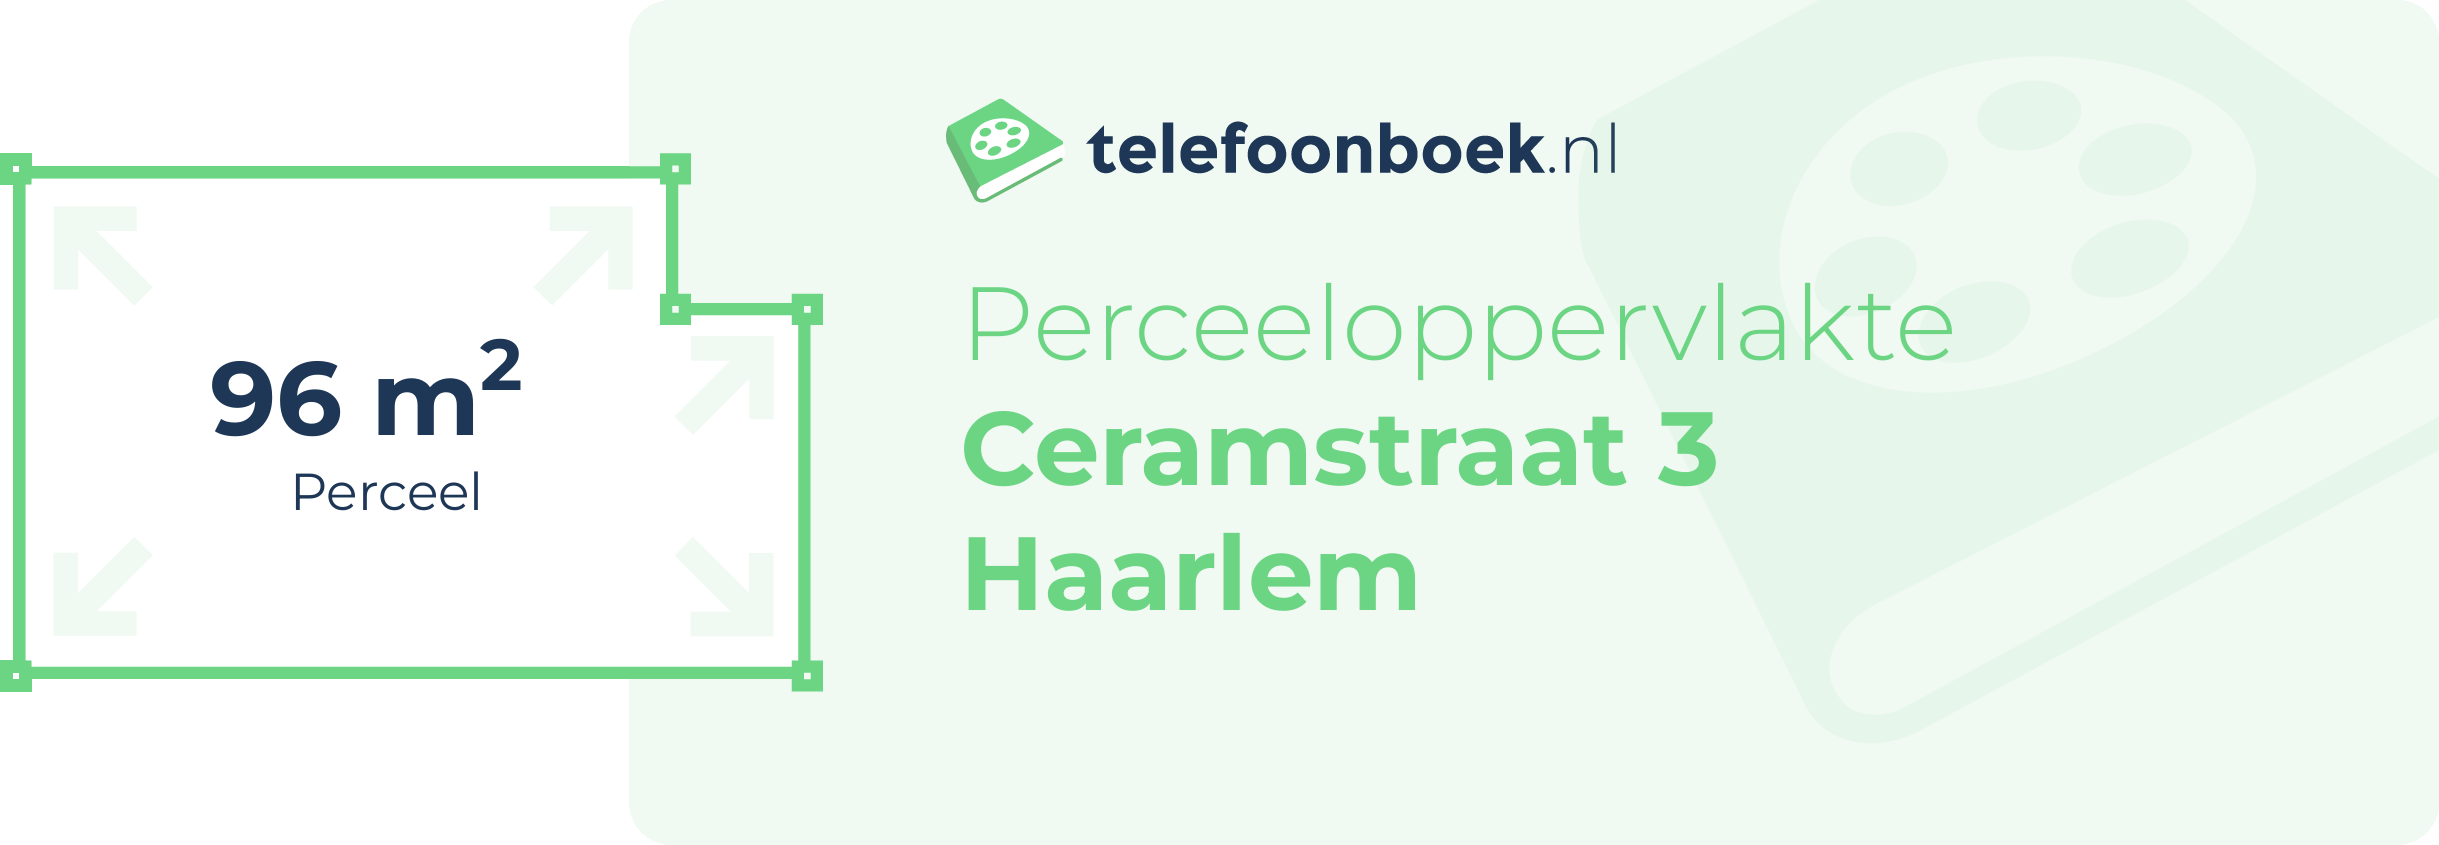 Perceeloppervlakte Ceramstraat 3 Haarlem